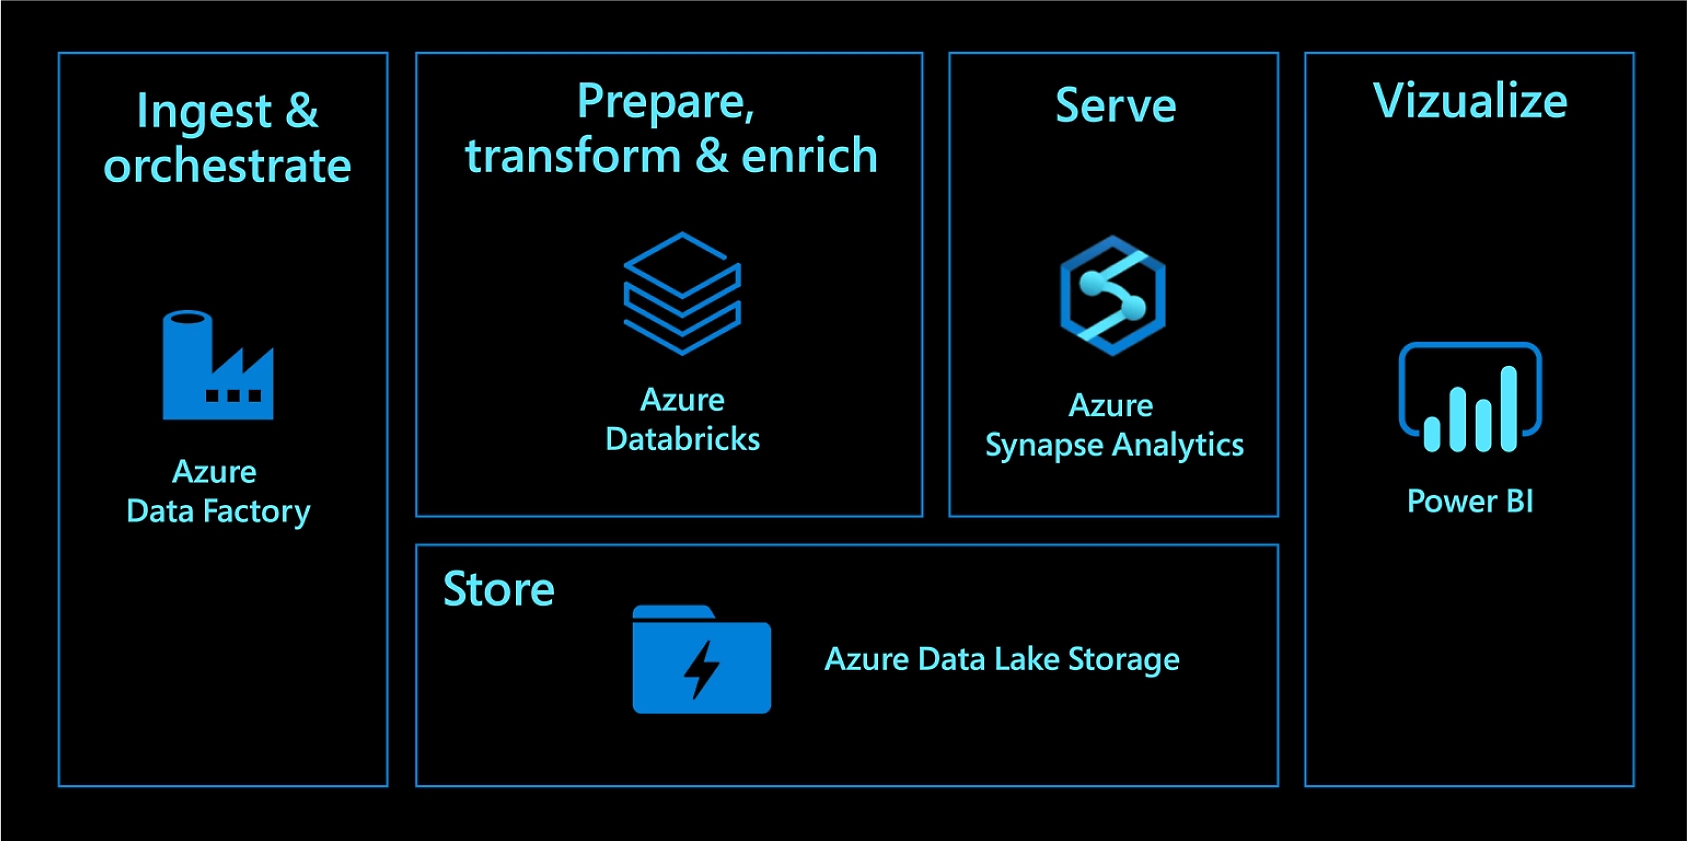 Прием данных и оркестрация с помощью Фабрики данных Azure. Подготовка, преобразование и обогащение данных с помощью Azure Databricks. Предоставление данных с помощью Azure Synapse Analytics. Хранение данных в Azure Data Lake Storage. Визуализация с помощью Power BI.